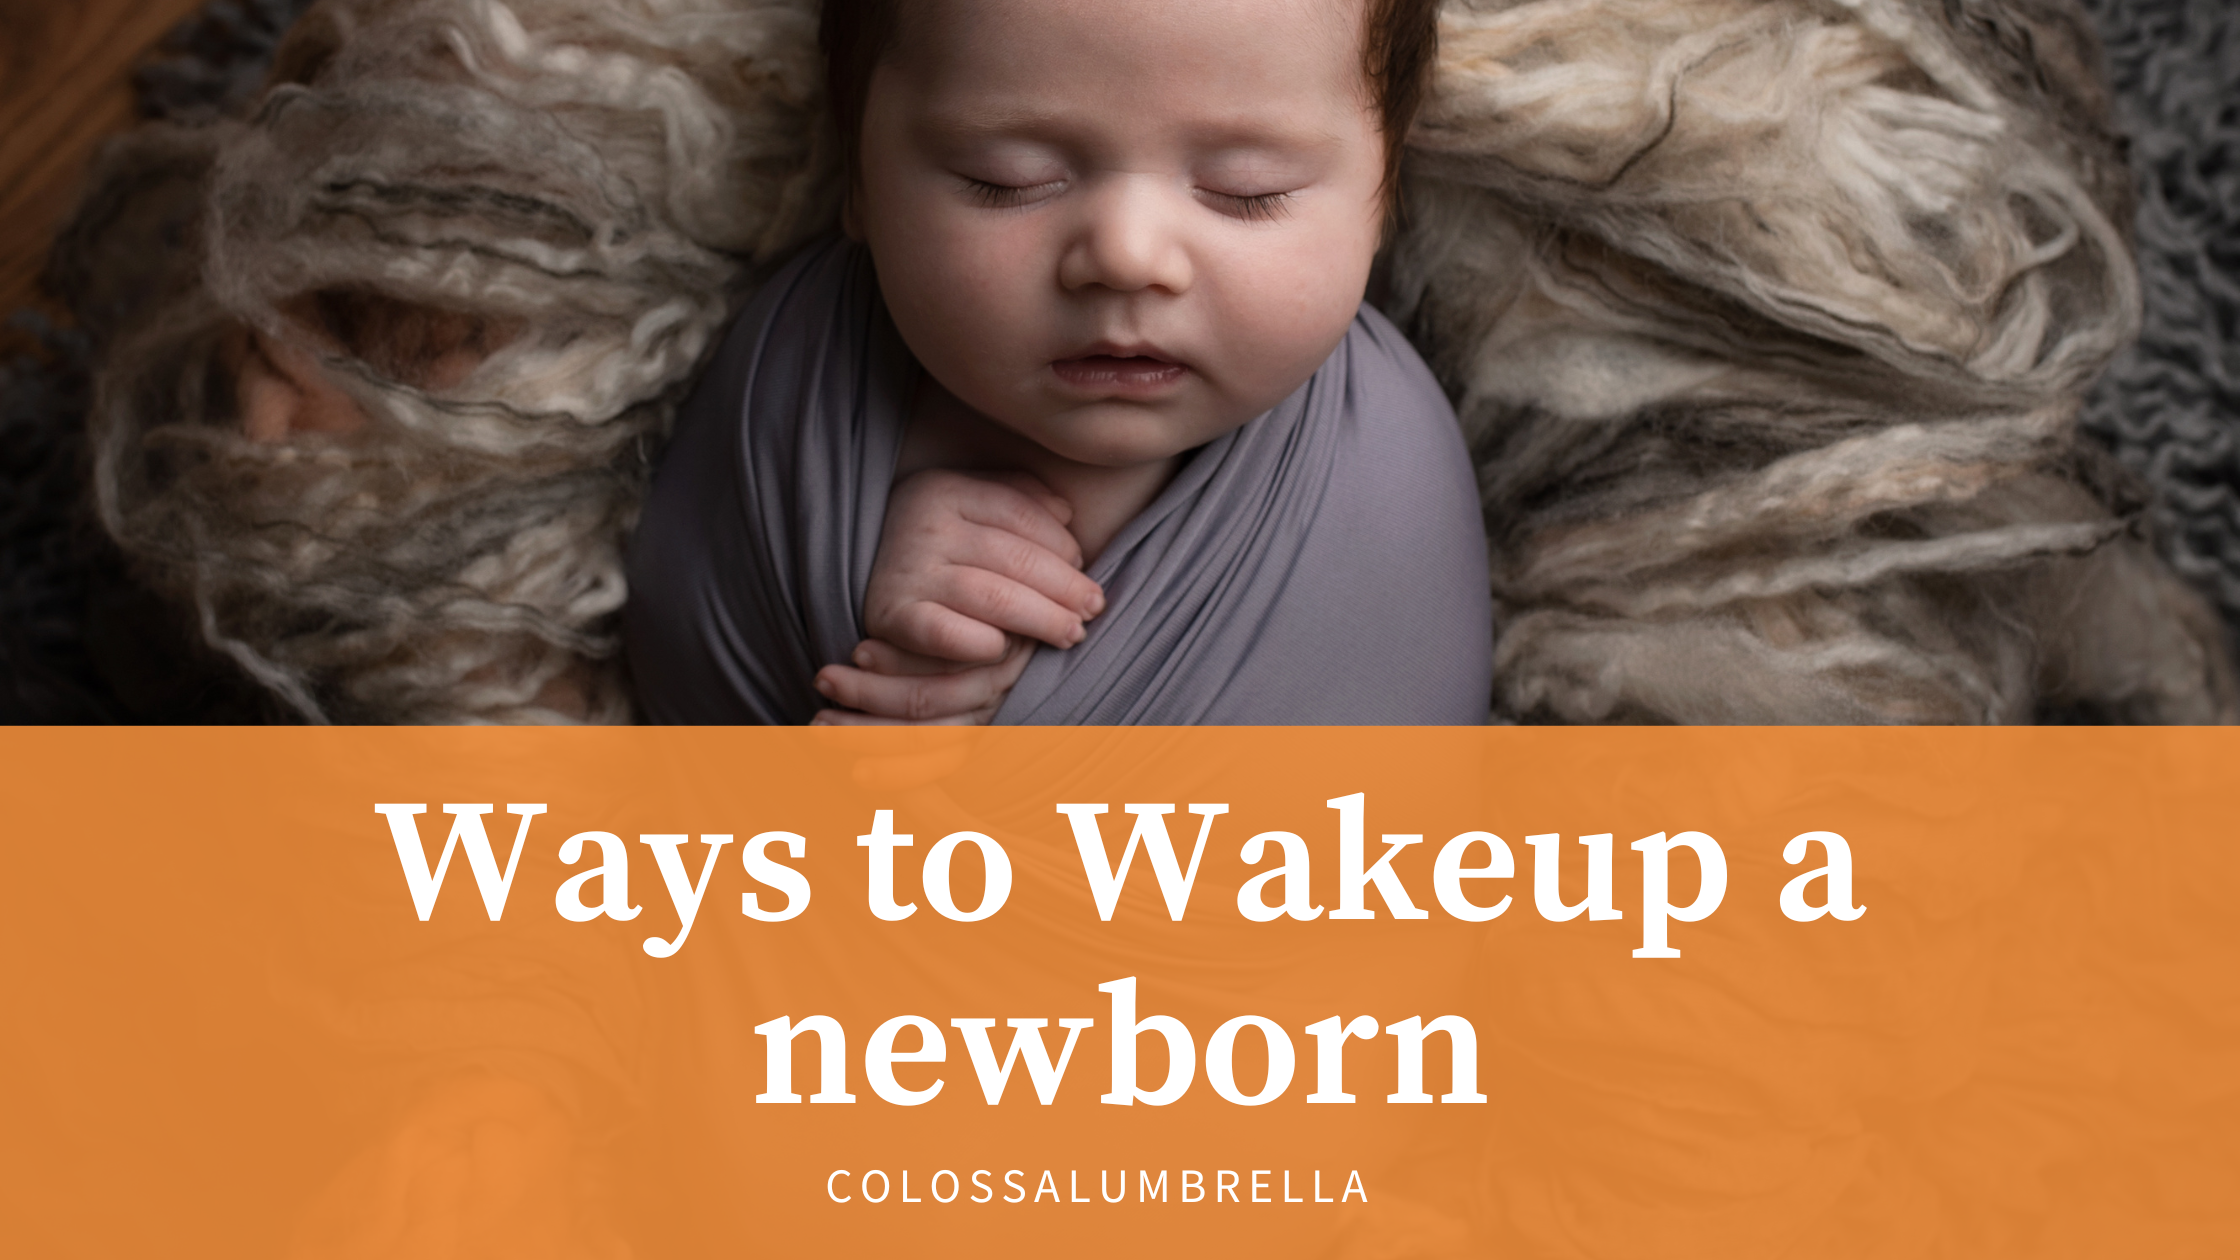 Ways to Wake up newborn to feed